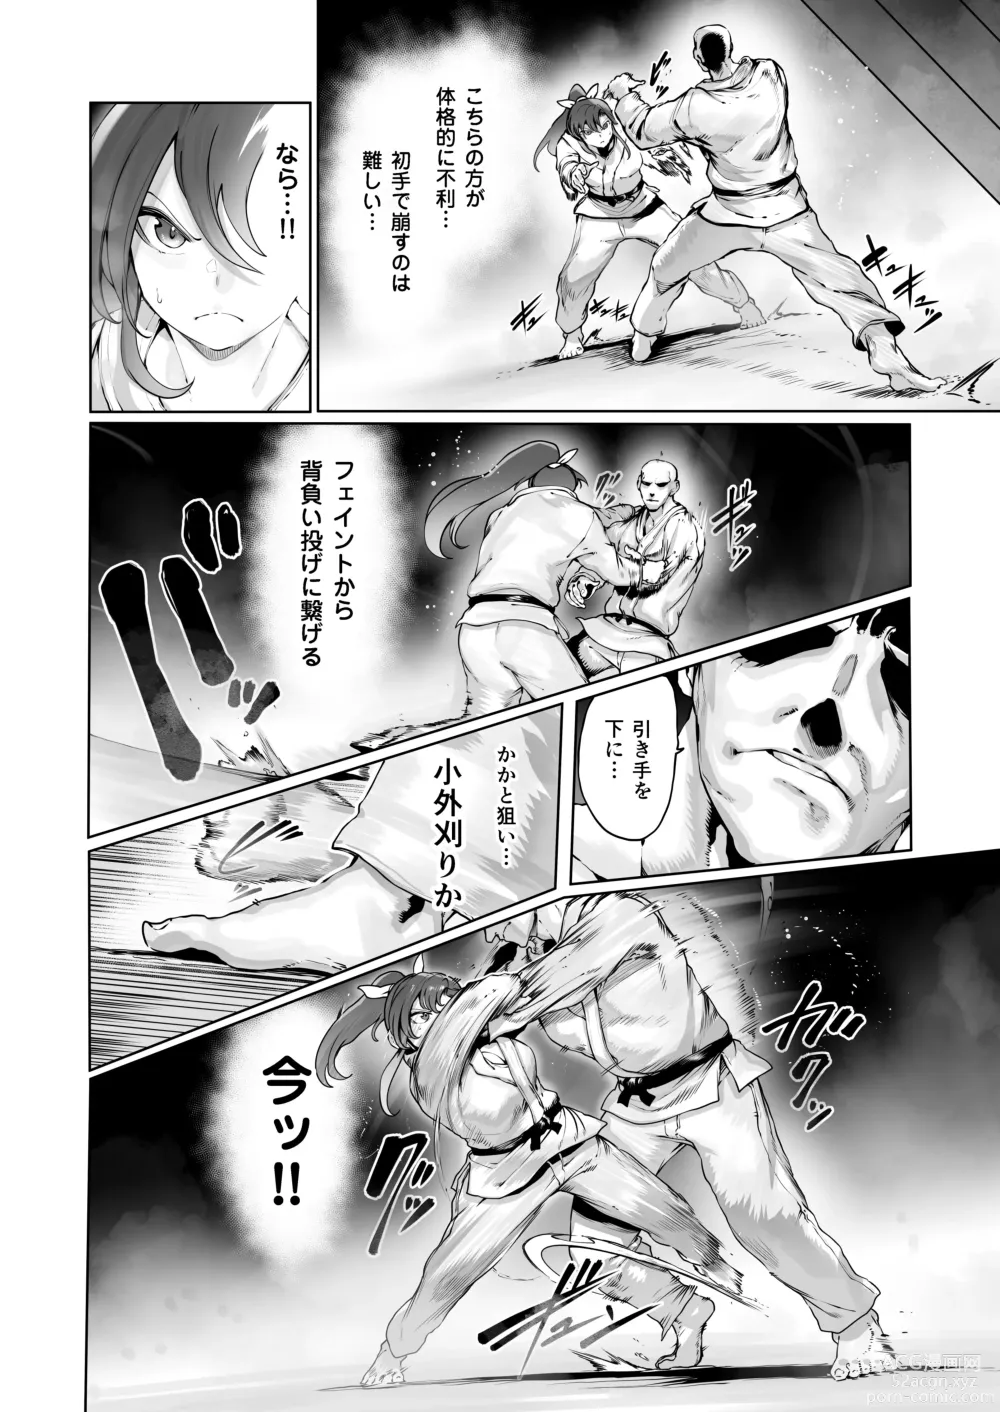 Page 11 of doujinshi Yozora no Tsuki ga Ochiru made